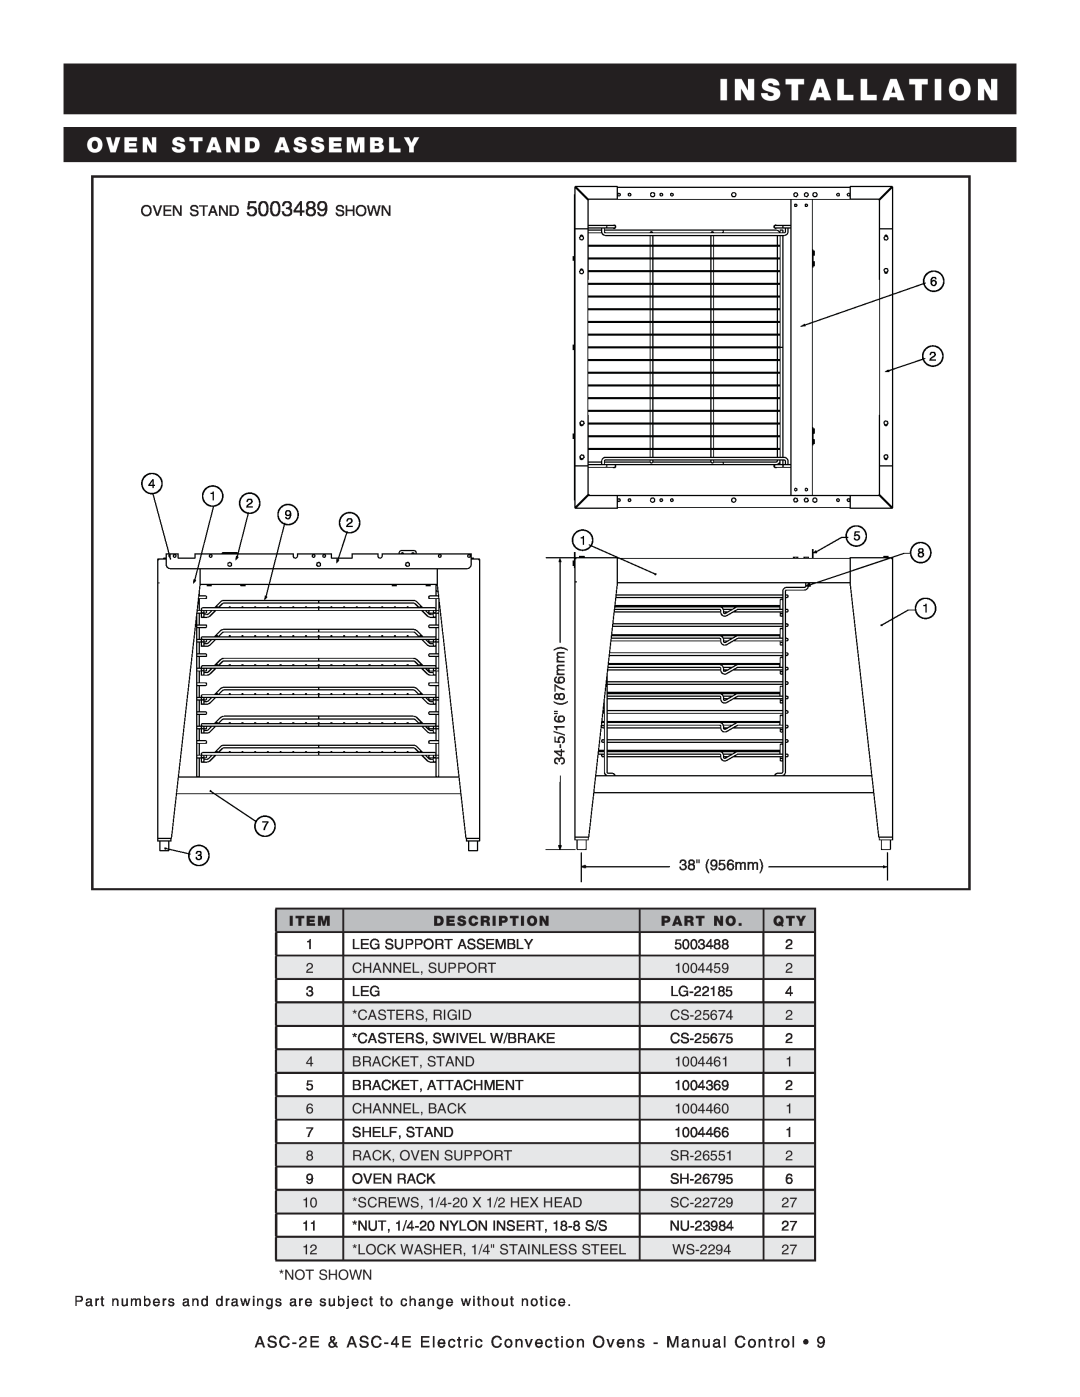 Alto-Shaam Convection Oven, ASC-4E, ASC-2E manual Oven Stand Assembly, I N S T A L L A T I O N, Description 